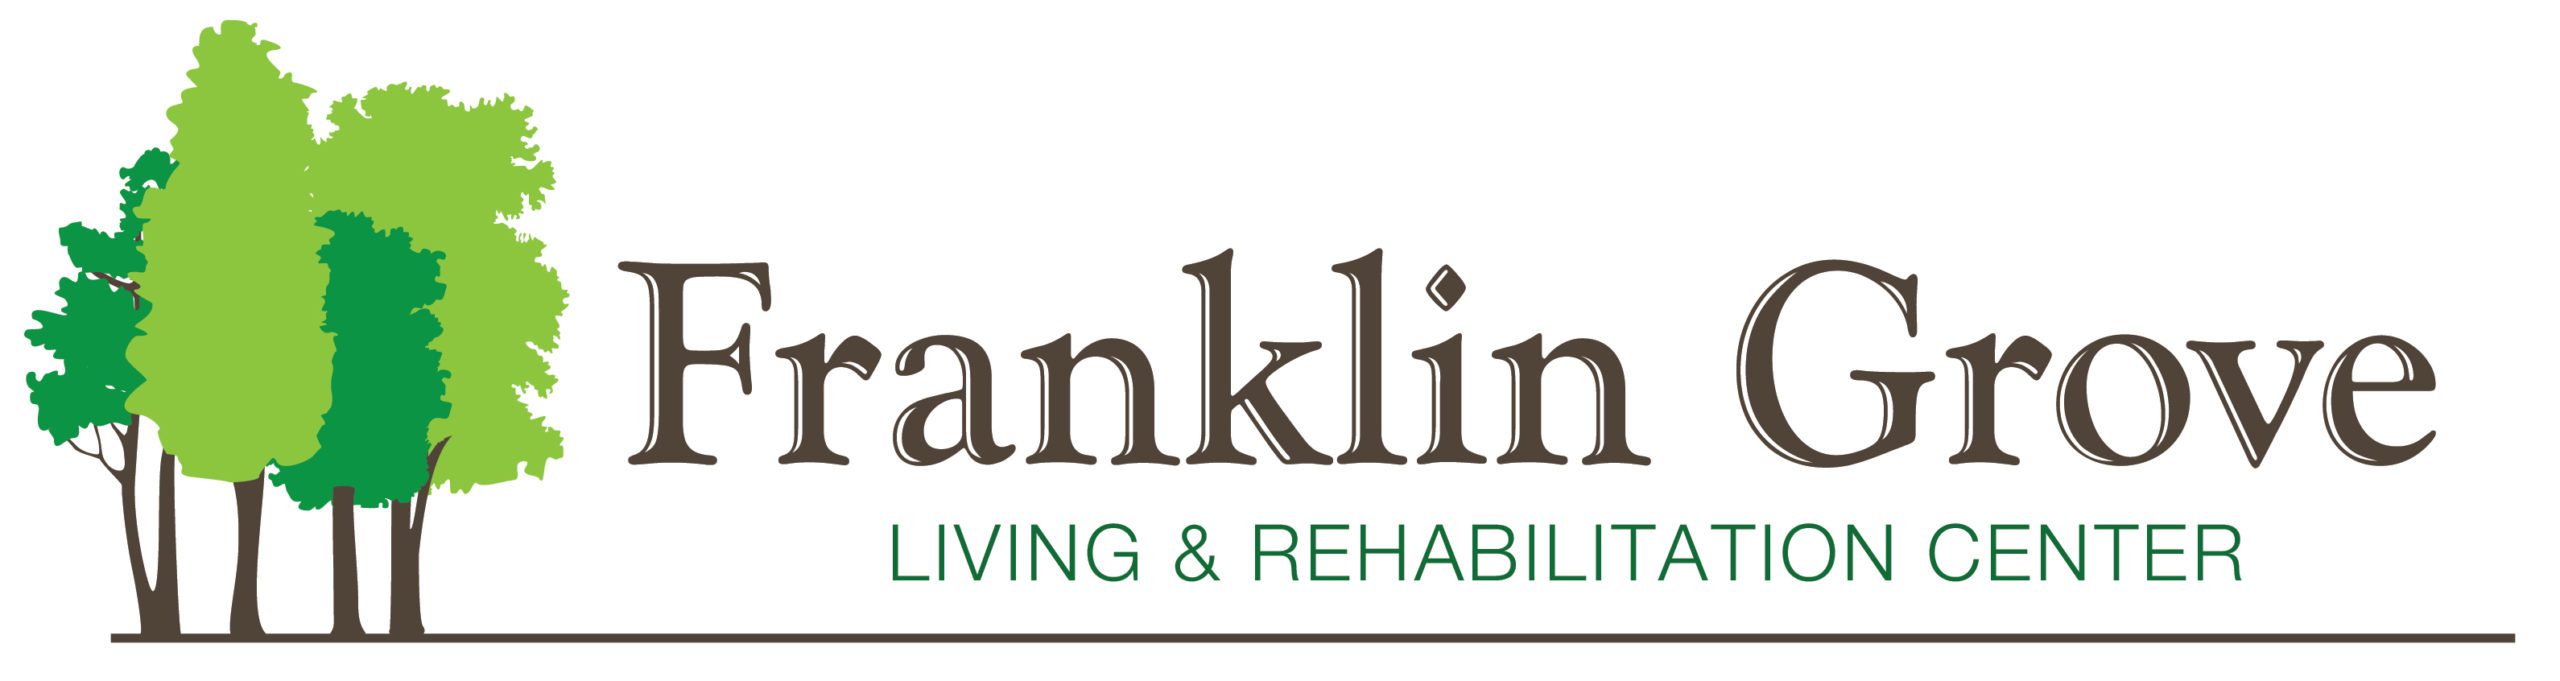 Franklin Grove Living & Rehabilitation Center